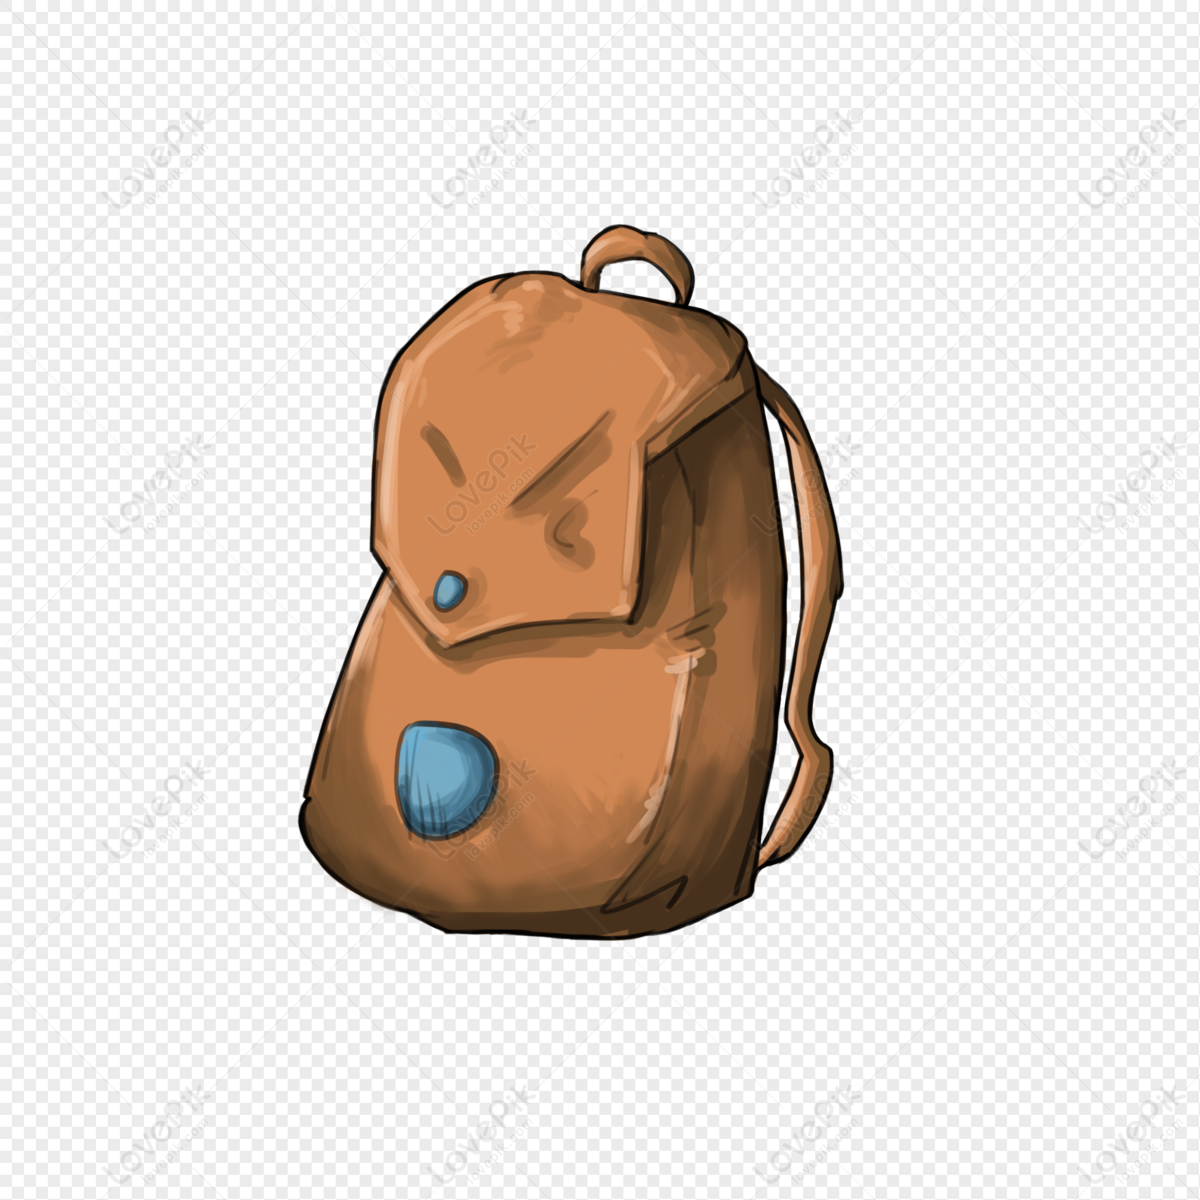 Backpack bag travel bag, free illustration, travel, game ground png free download